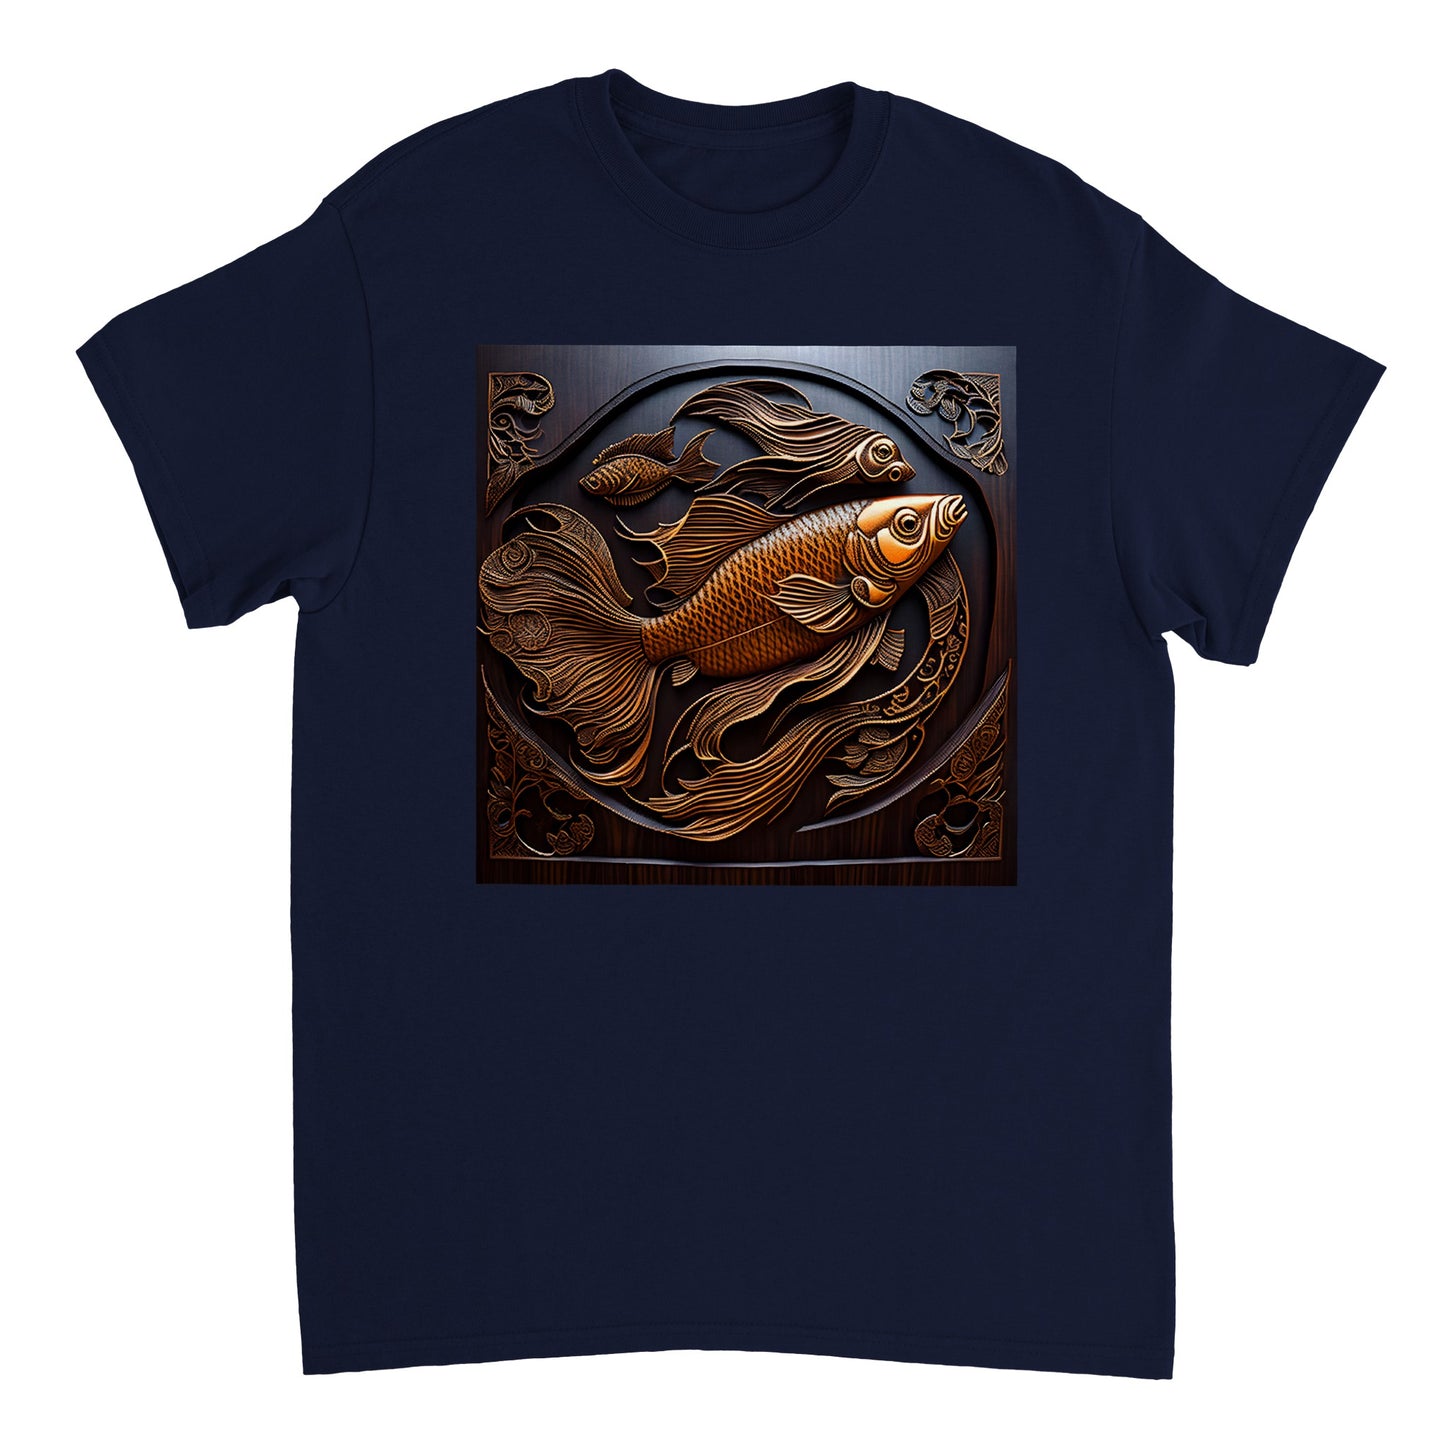 3D Wooden Animal Art - Heavyweight Unisex Crewneck T-shirt 53